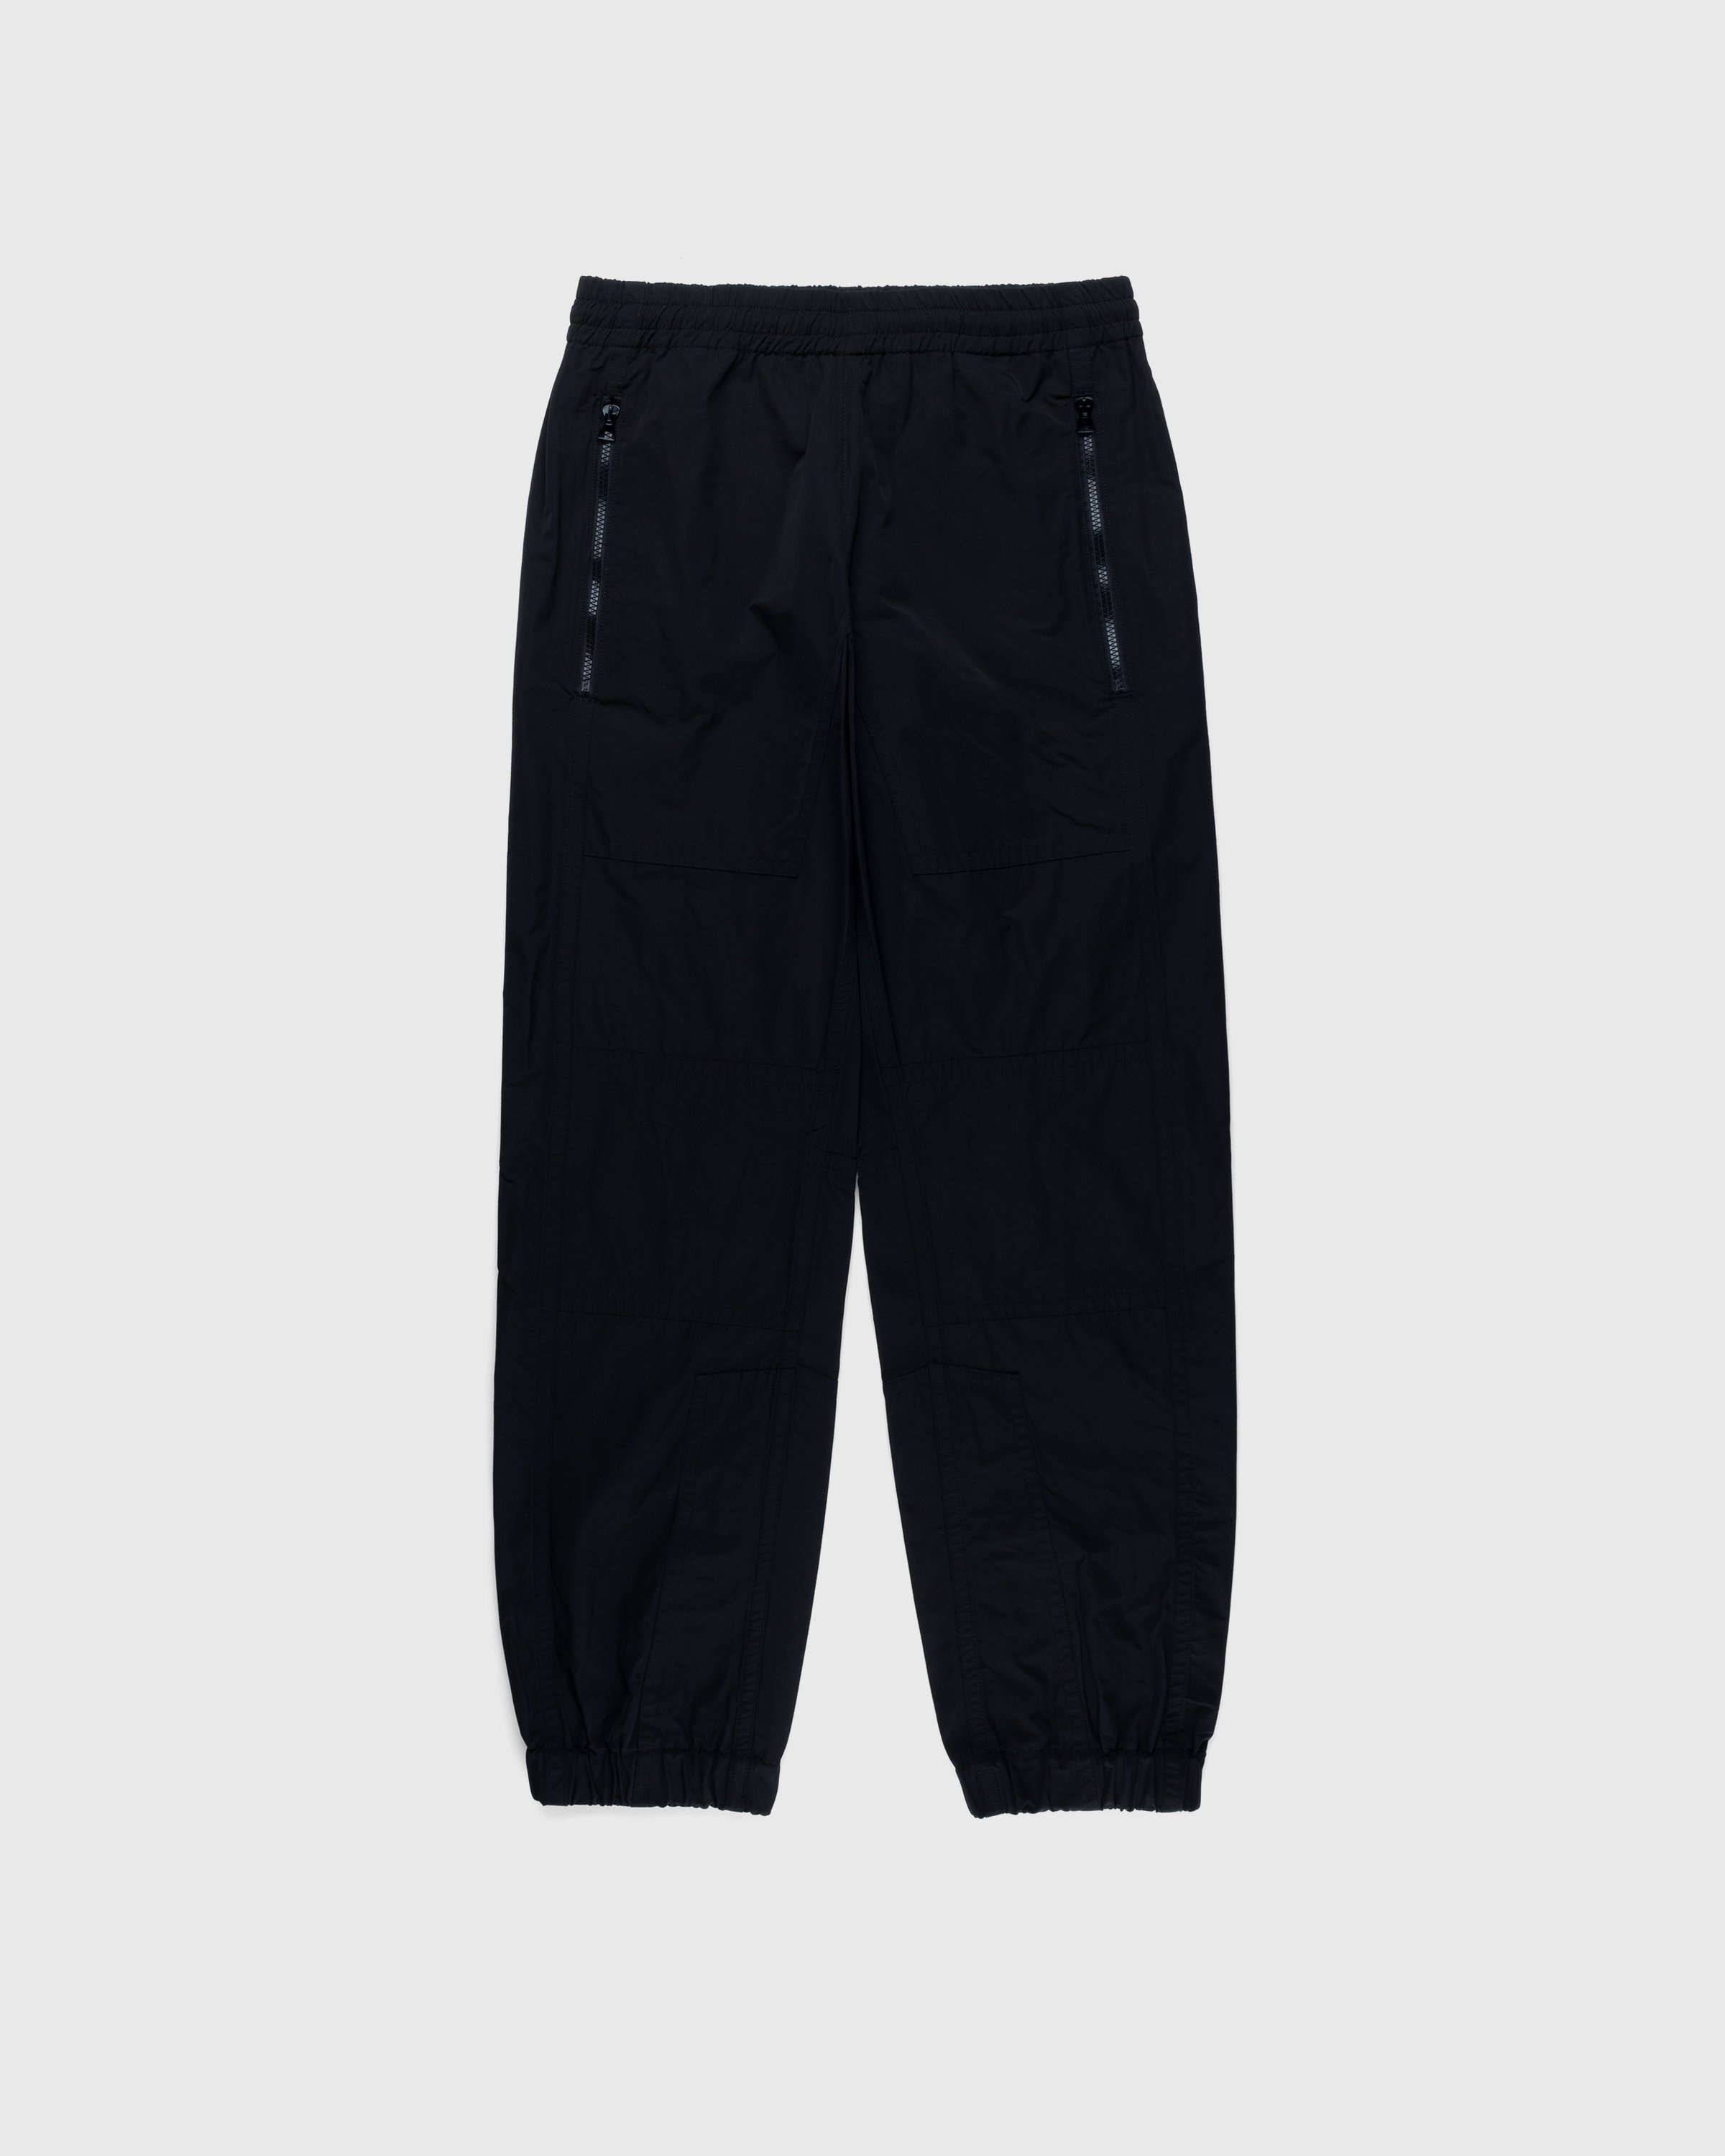 Dries van Noten – Peatt Pants - Active Pants - Black - Image 1